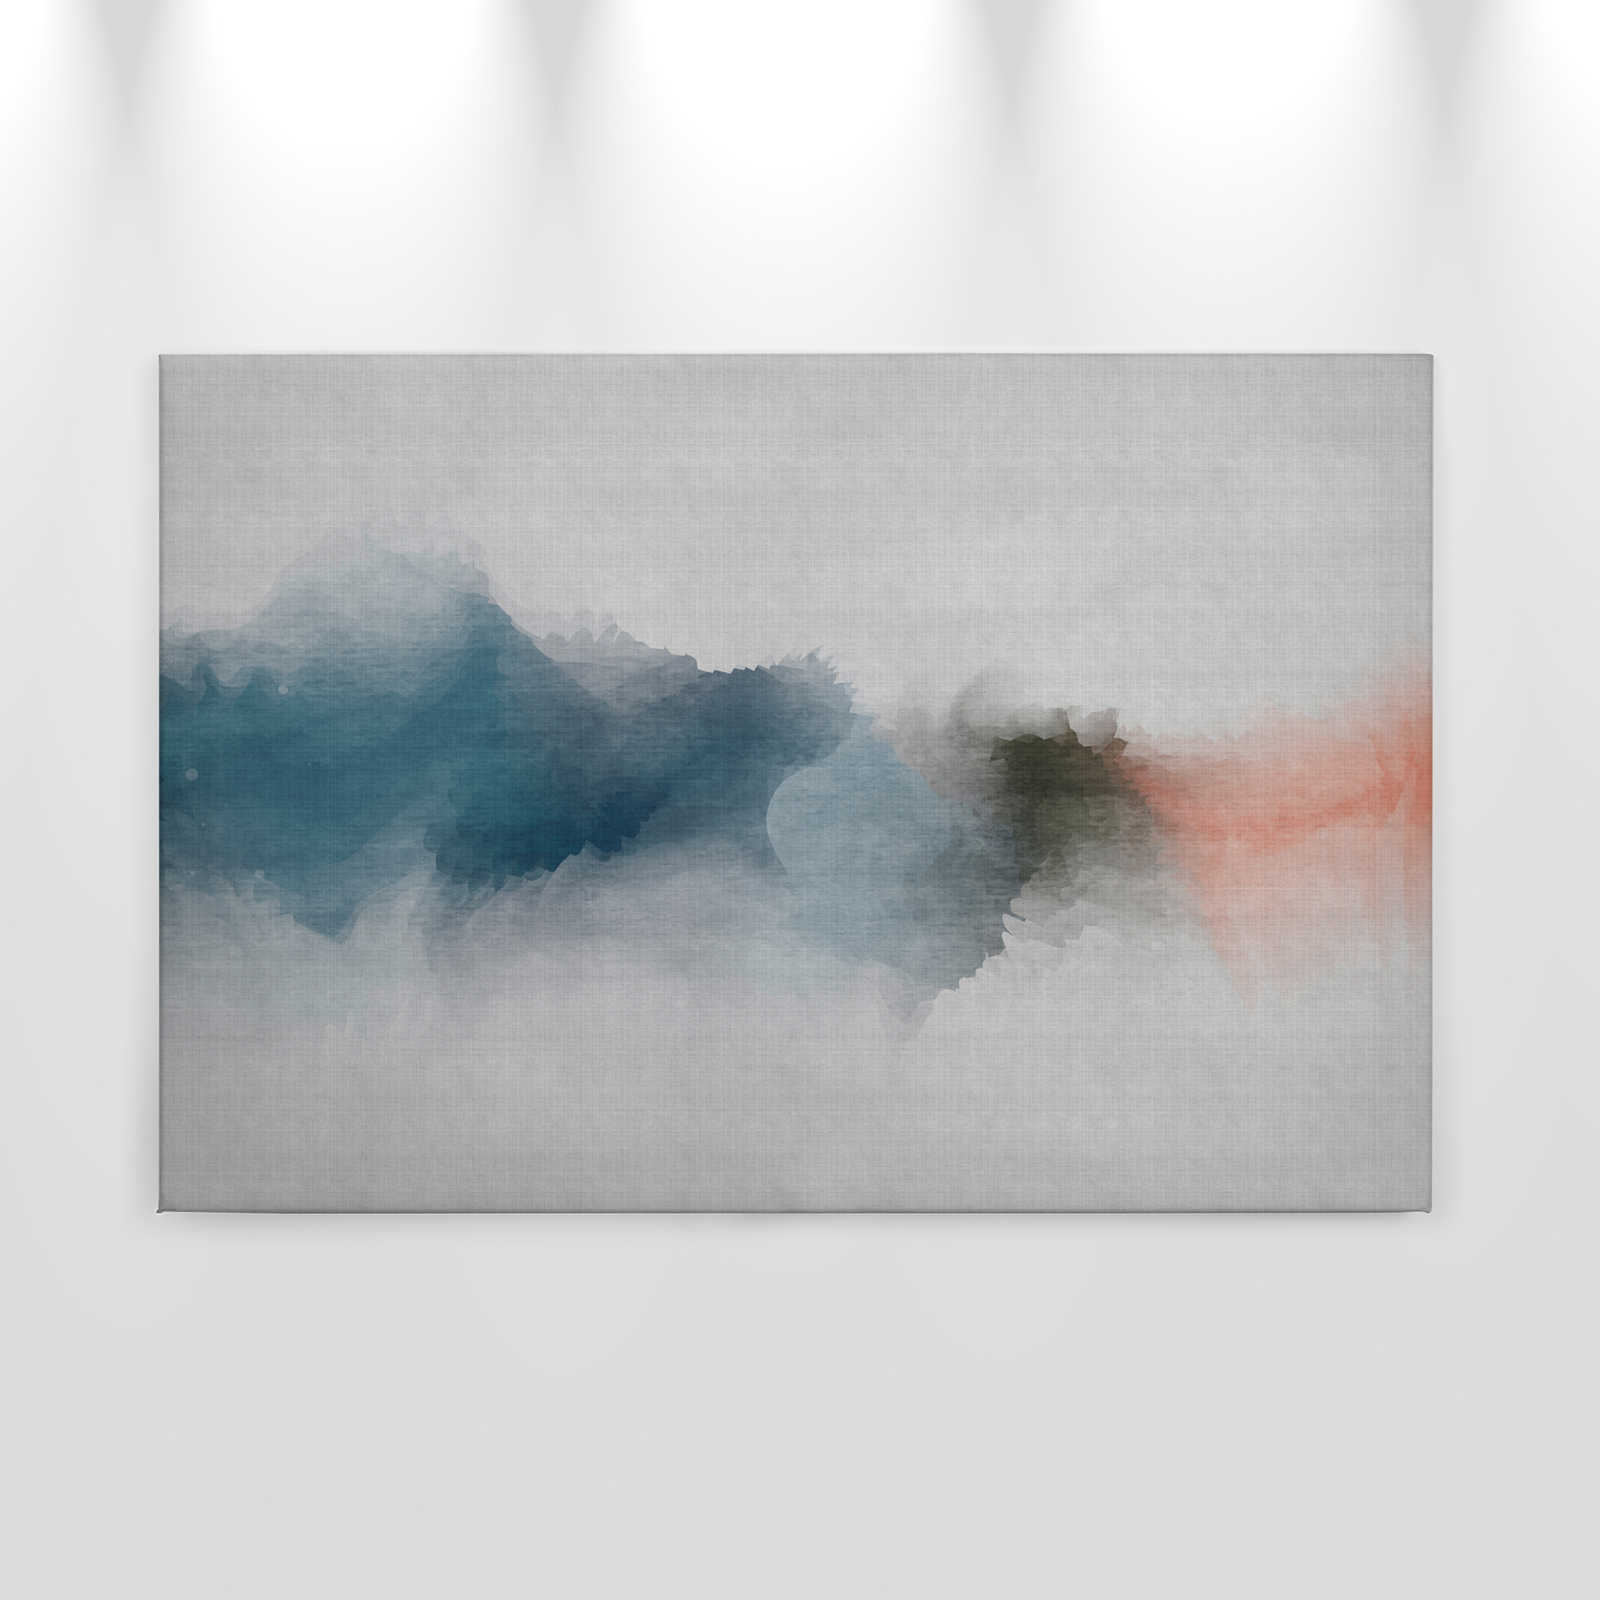             Daydream 1 - Minimalistisches Leinwandbild im Aquarell Stil- Naturleinen Struktur – 0,90 m x 0,60 m
        